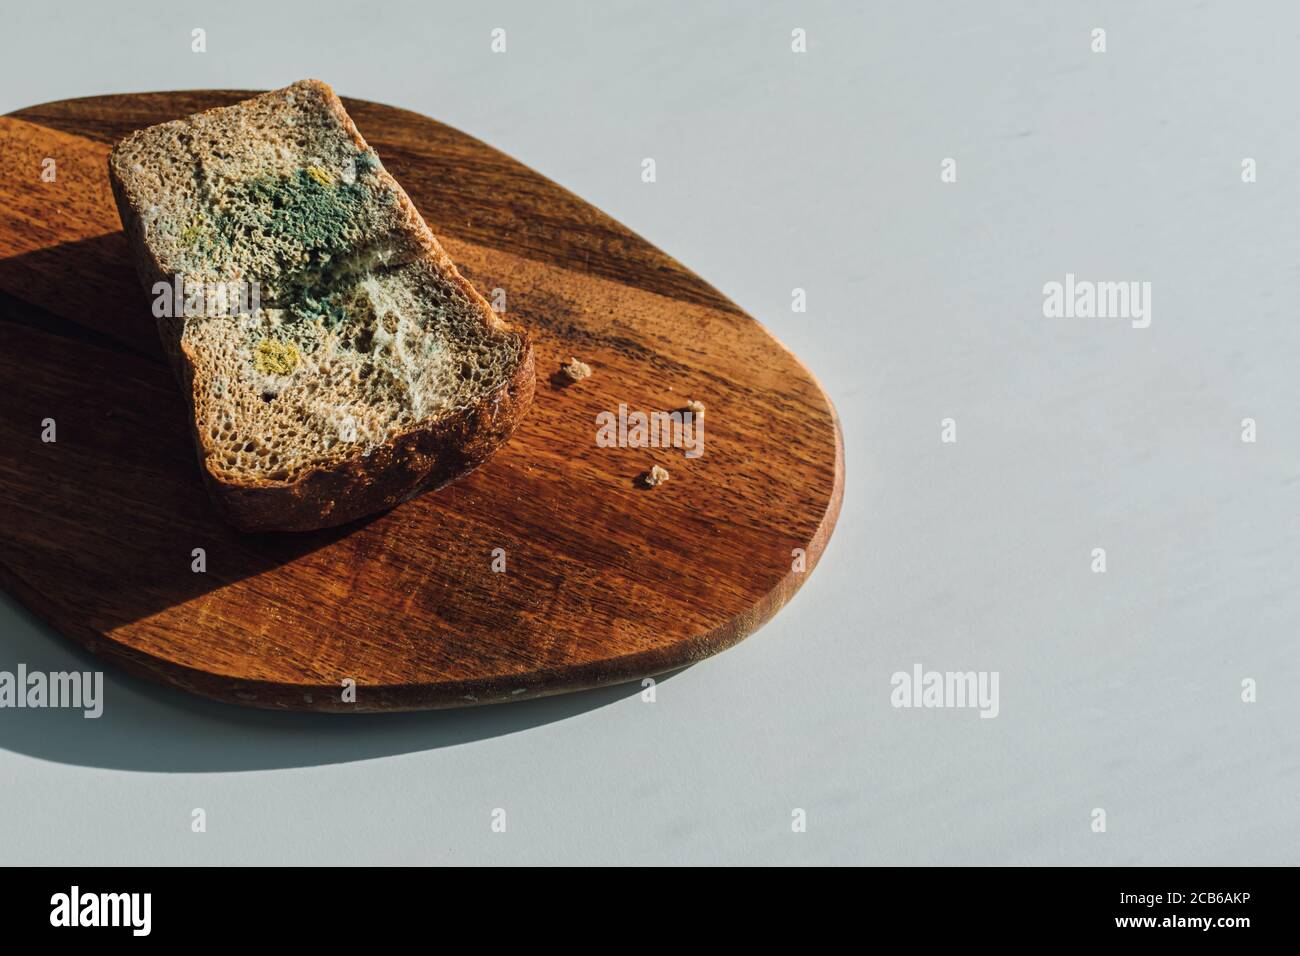 Molde sobre pan, un trozo de pan de centeno con molde blanco y verde sobre una tabla de madera. La fecha de mejor antes ha caducado. Foto de stock